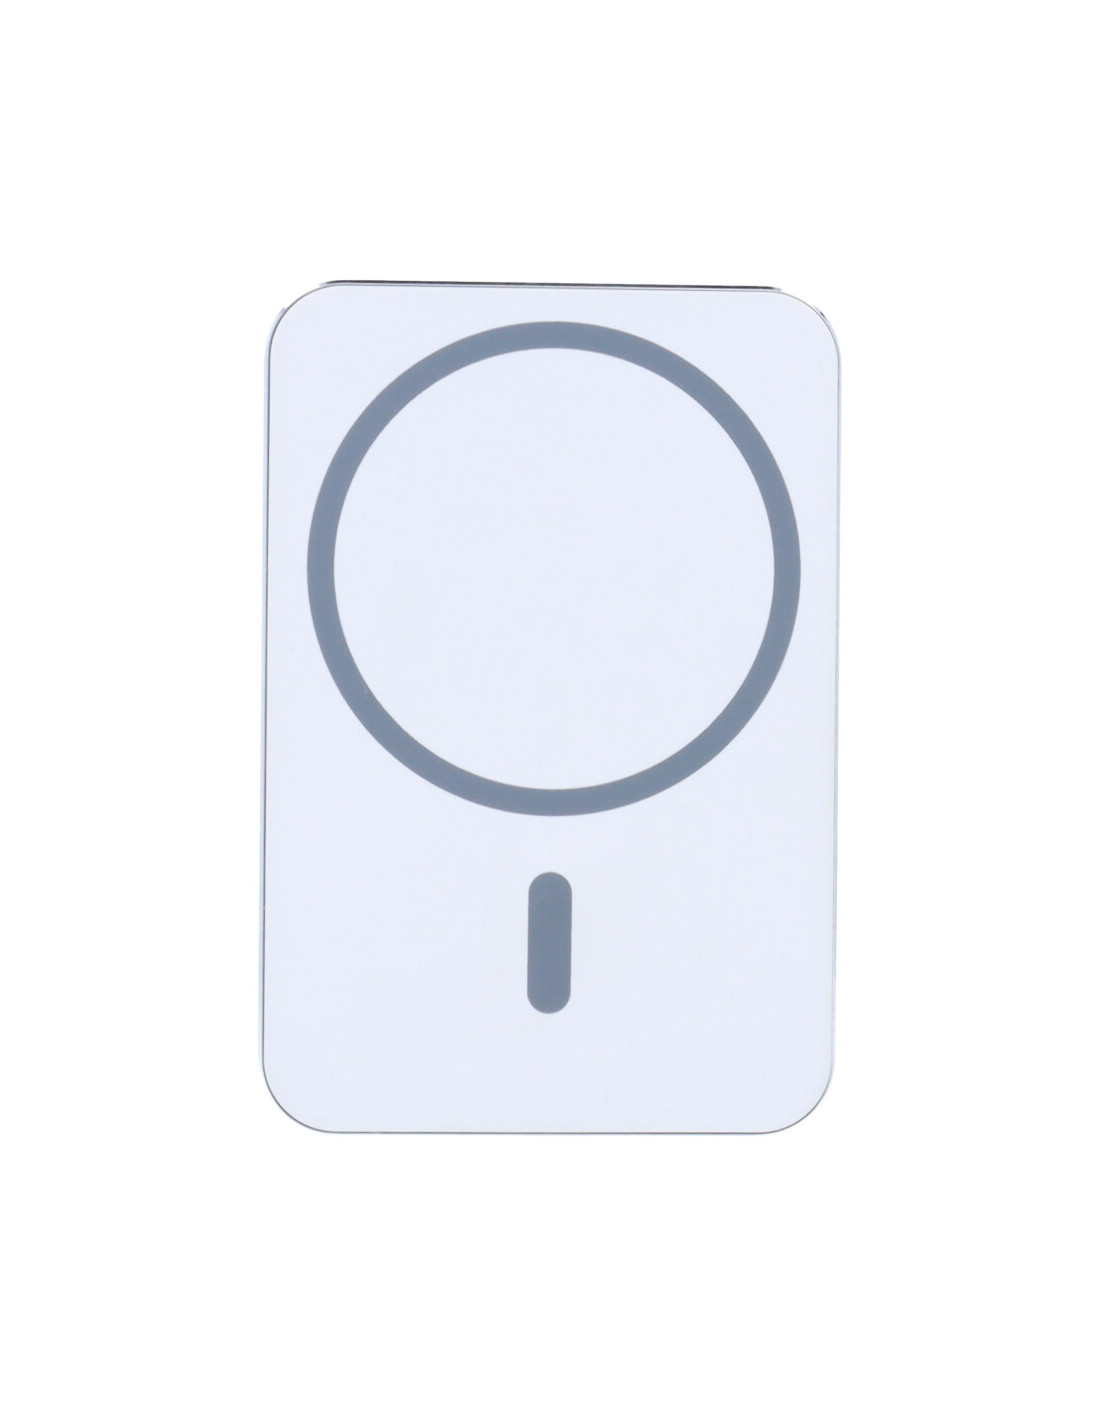 Cargador de coche MagSafe para iPhone – EDGE